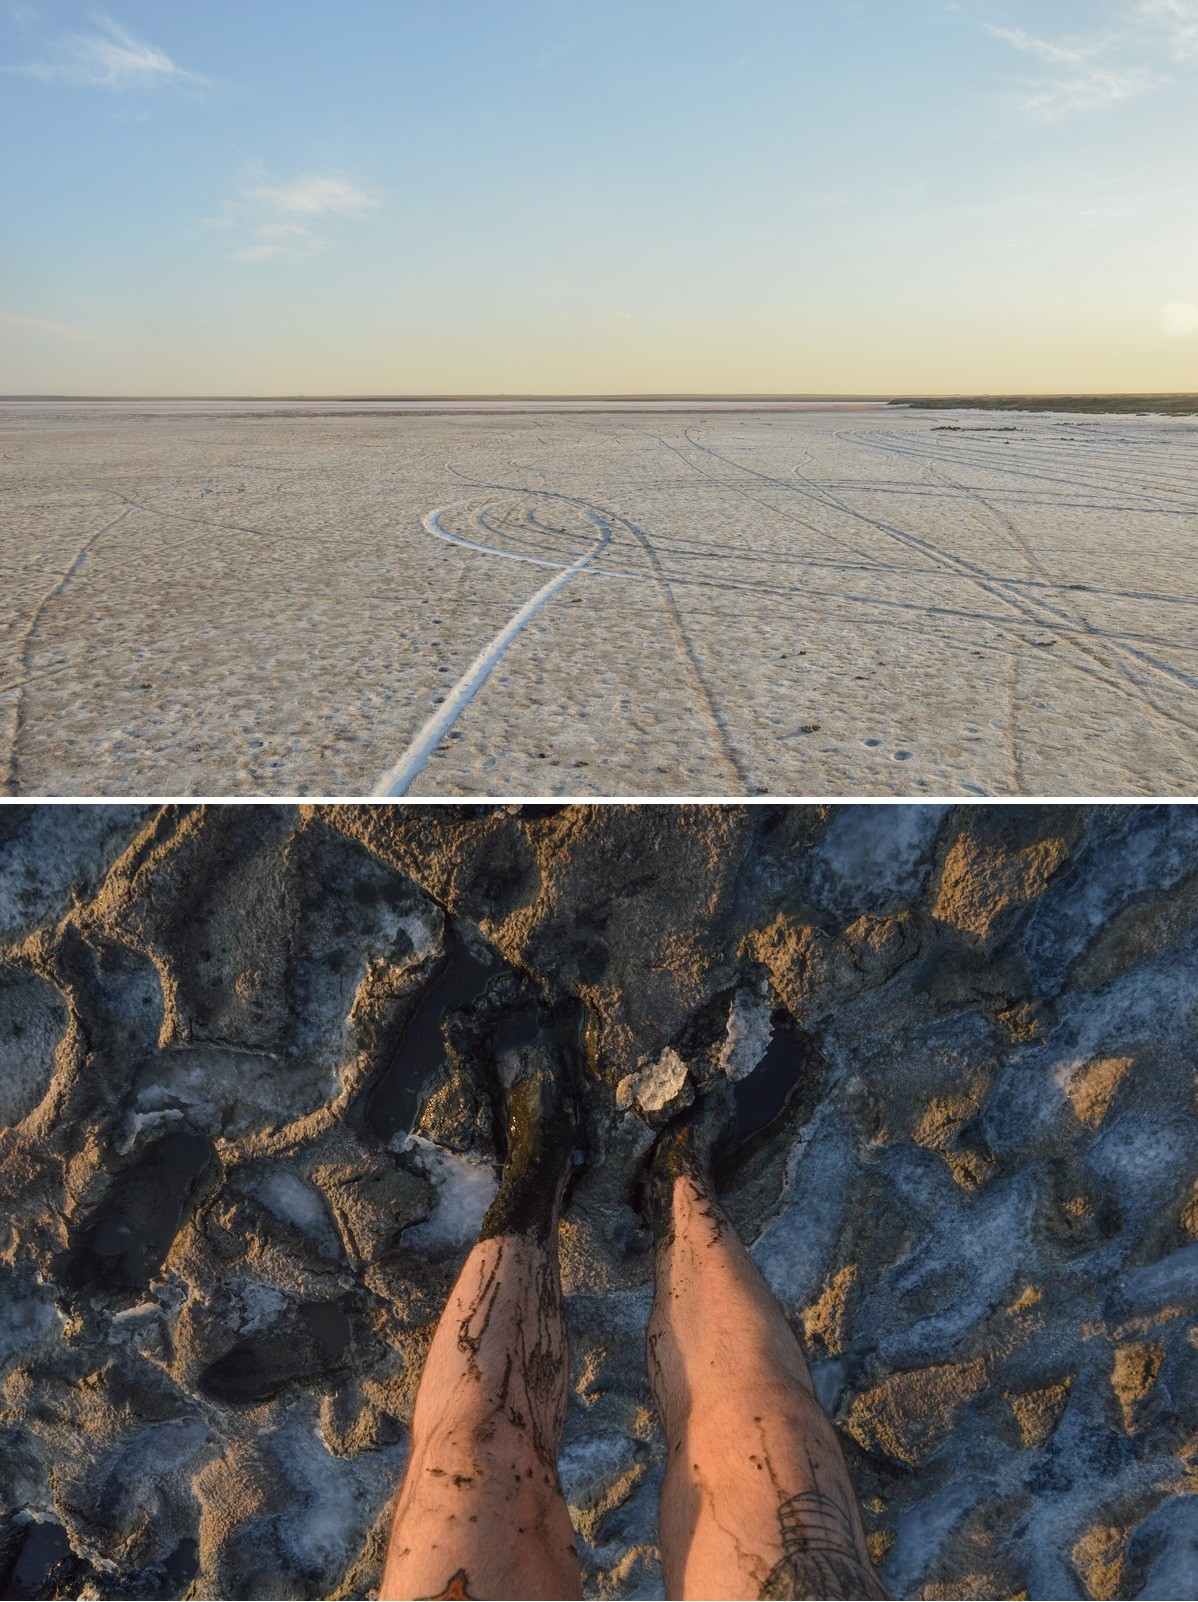 Le lac salé de Koltan-Nour. Le sol renferme une boue noire aux propriétés curatives appréciées.